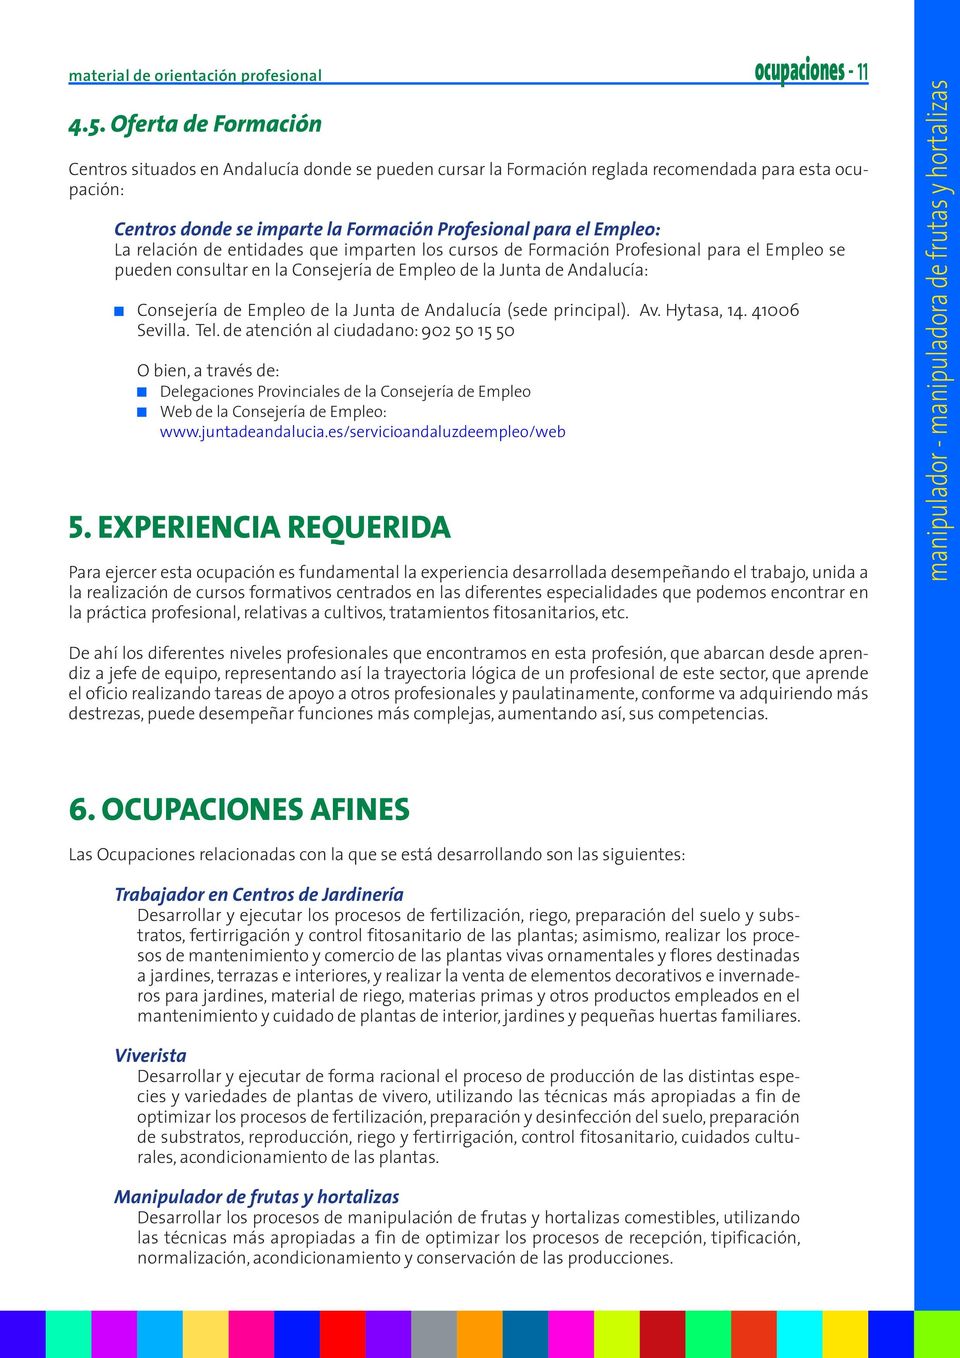 relación de entidades que imparten los cursos de Formación Profesional para el Empleo se pueden consultar en la Consejería de Empleo de la Junta de Andalucía: Consejería de Empleo de la Junta de